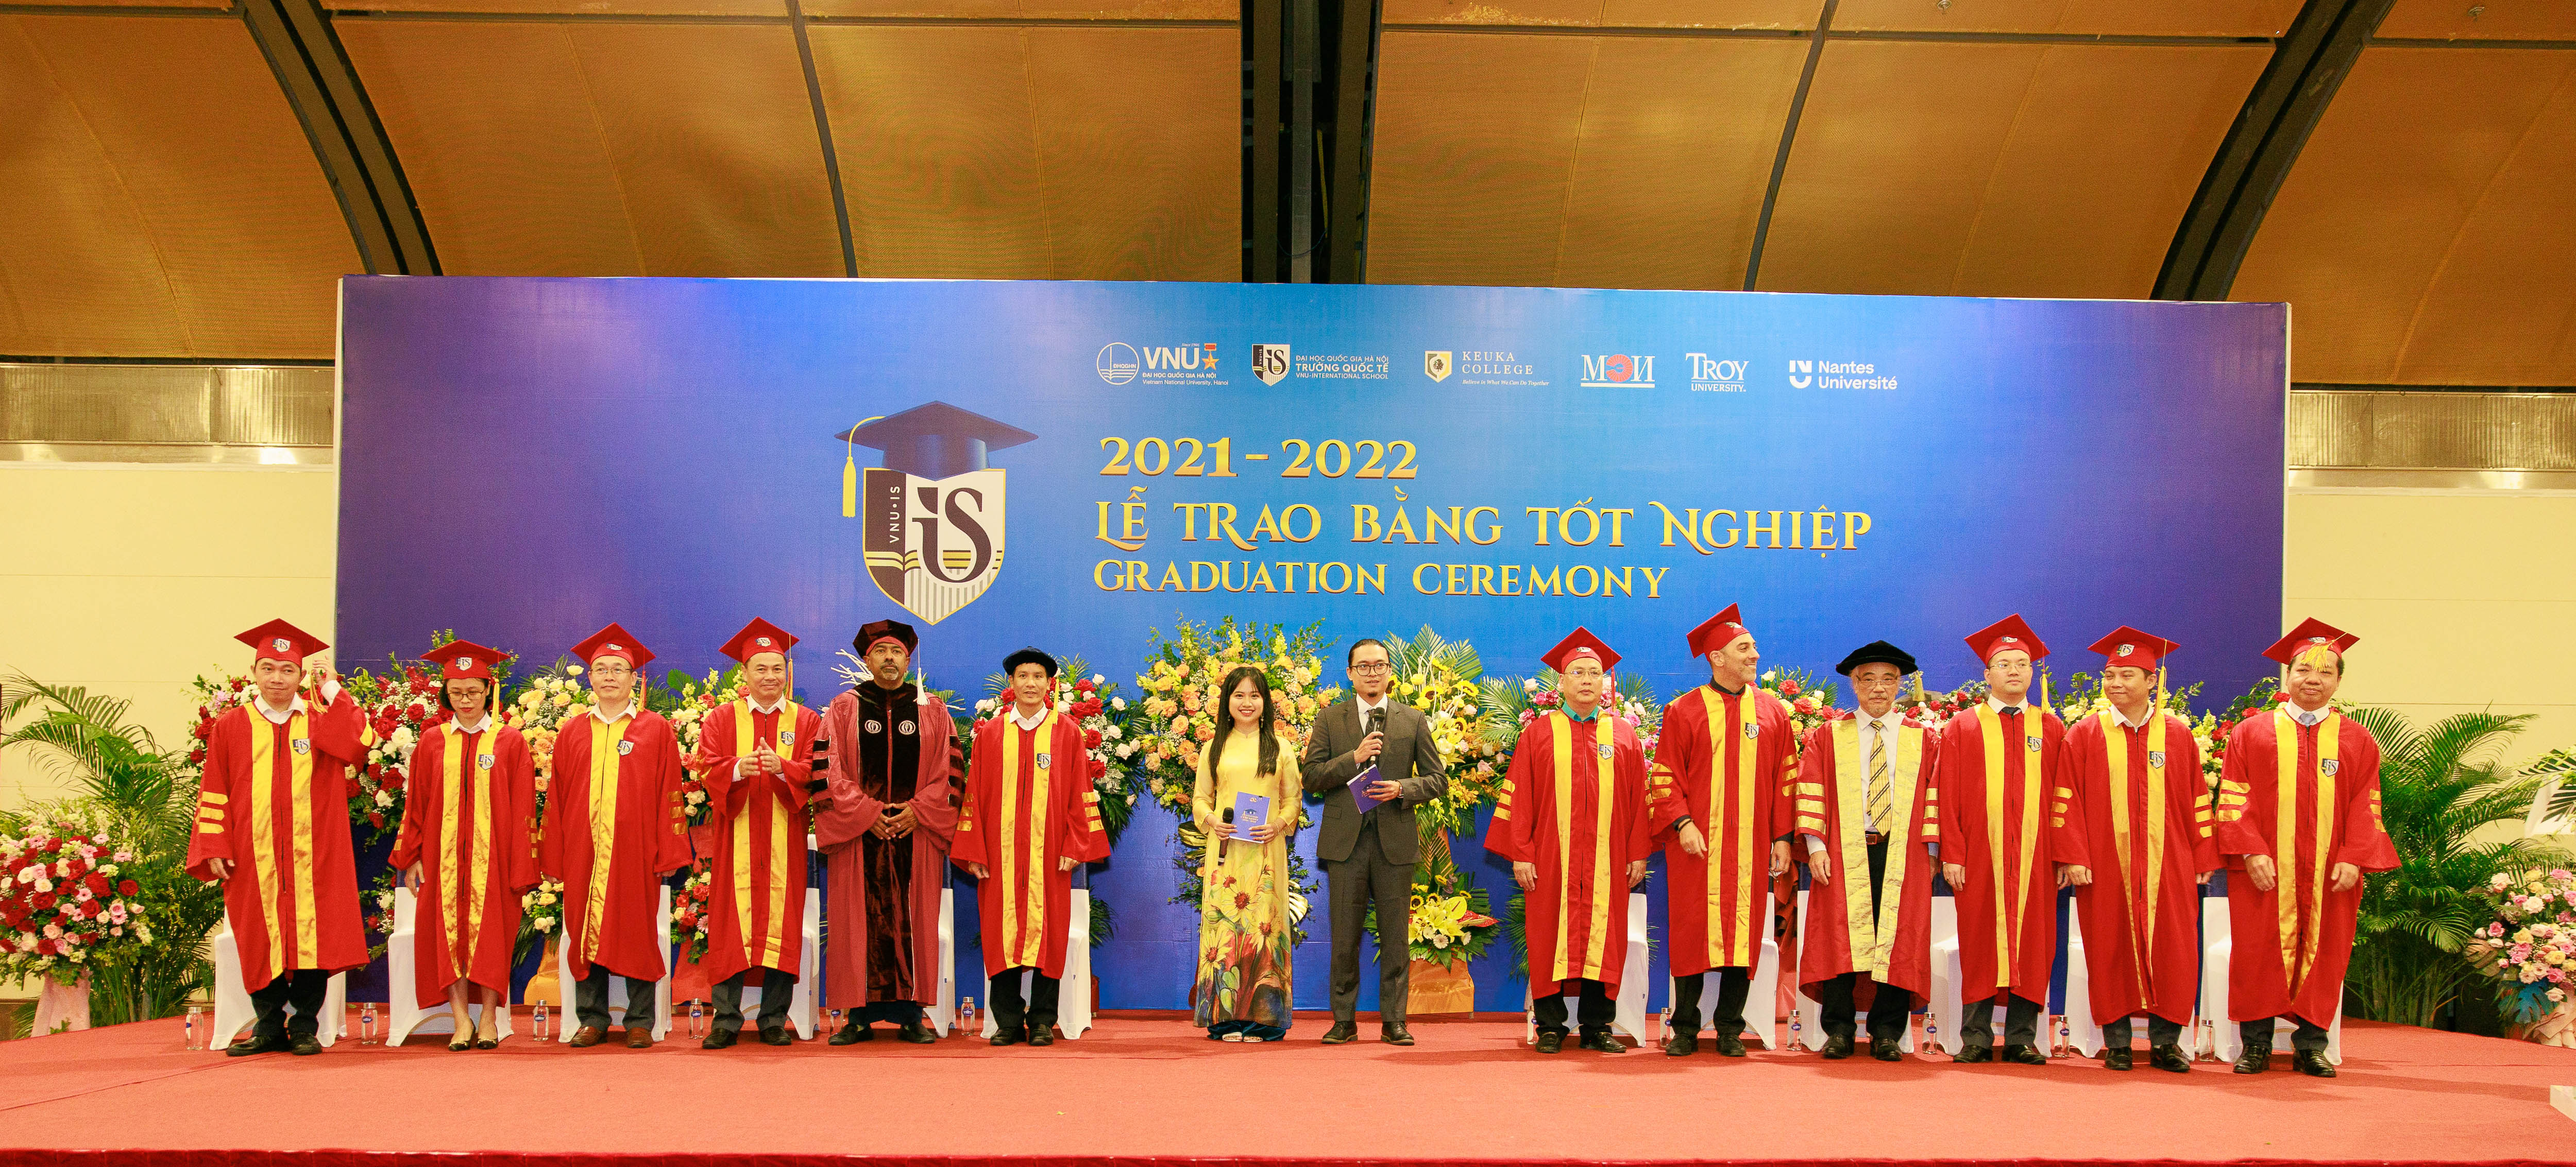 Trường Quốc tế - Đại học Quốc gia Hà Nội đã tổ chức Lễ Trao bằng tốt nghiệp 2021-2022